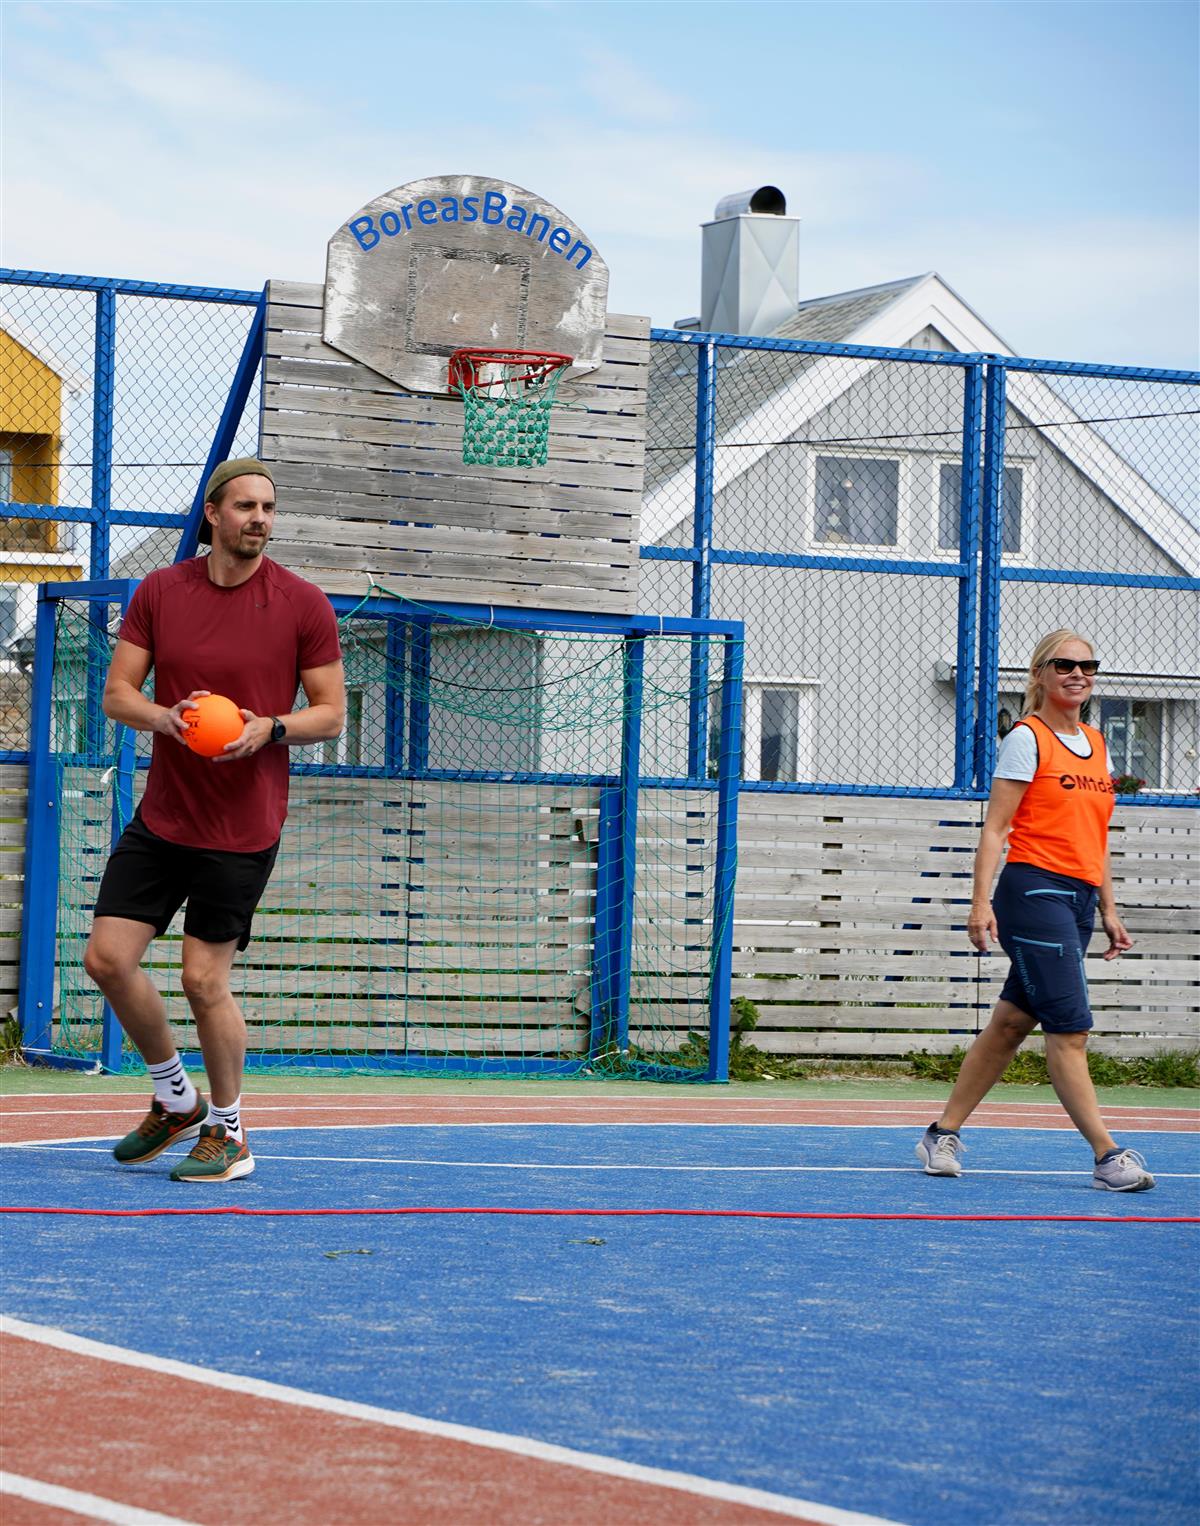 En mann og en dame ikledd shorts, tskjorte og oransje vest kaster ball mot kamera inne i en fotballgrind - Klikk for stort bilde